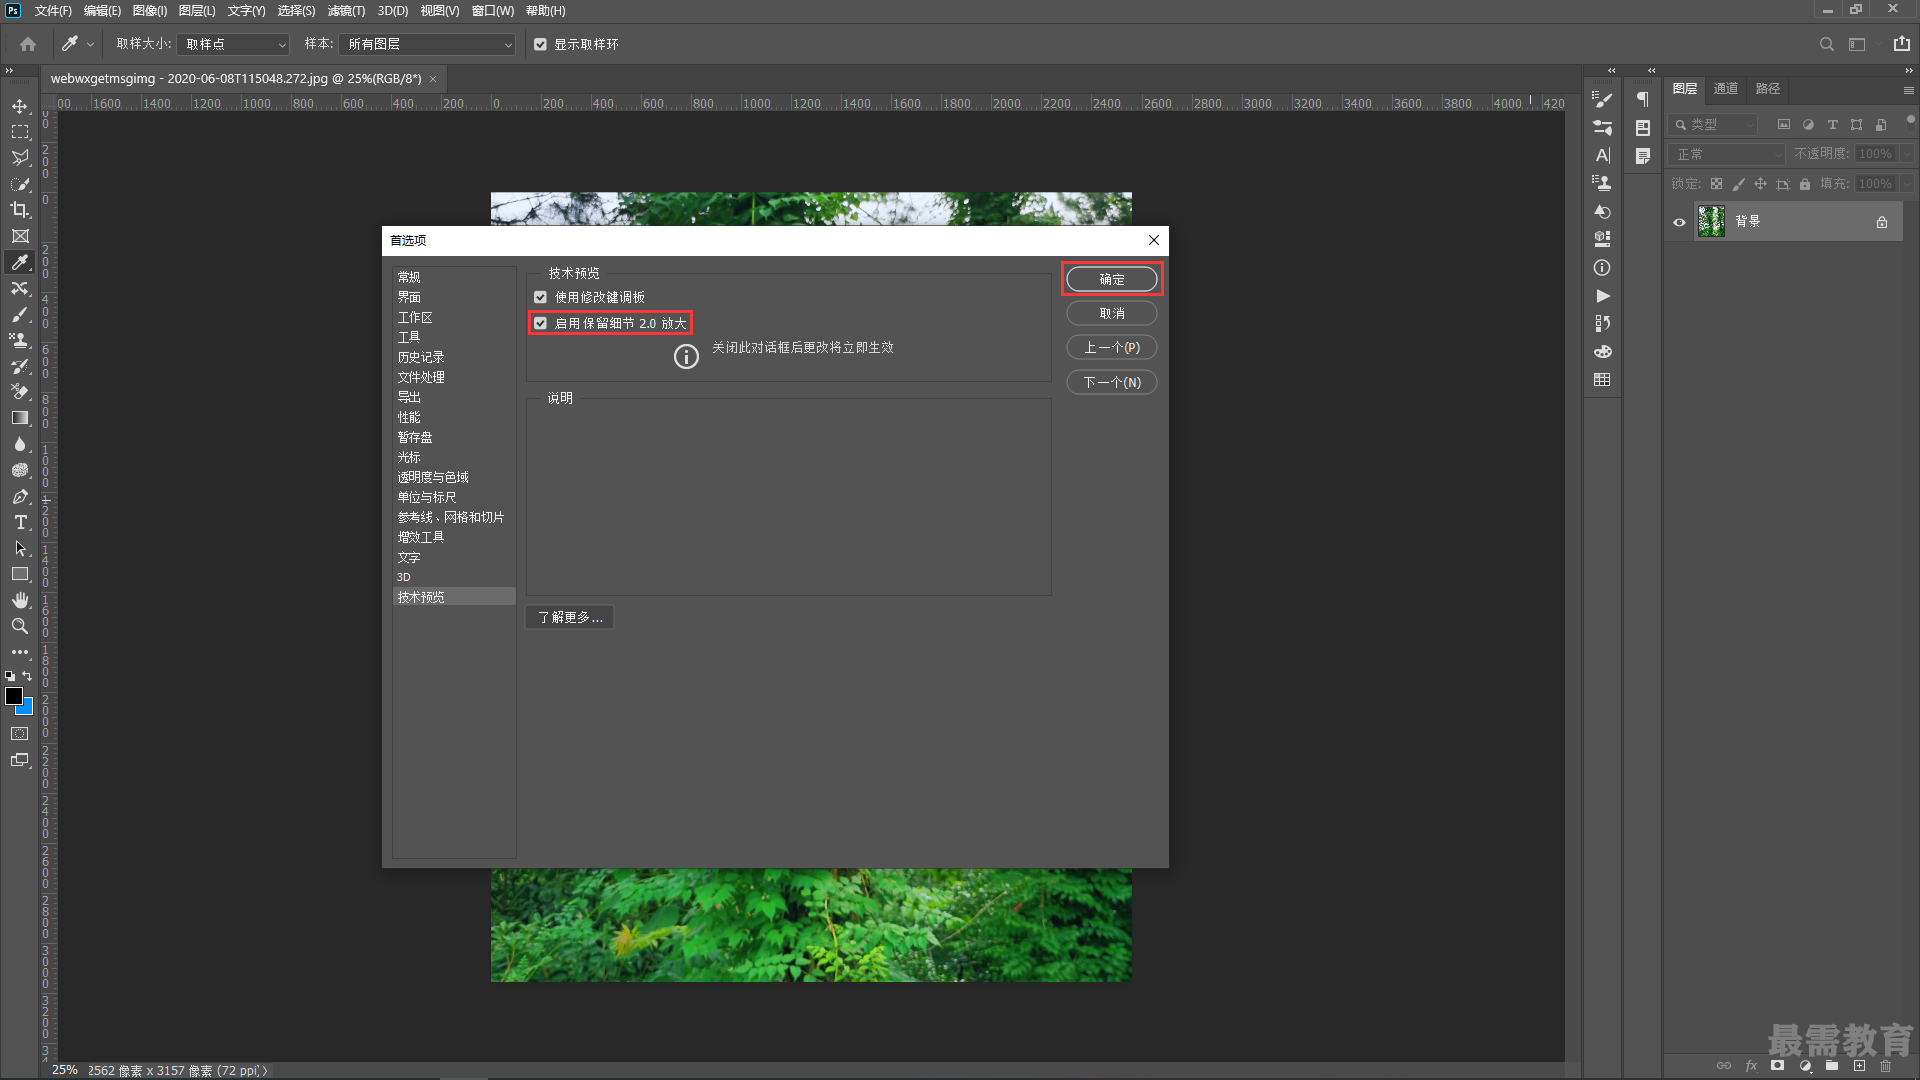 Adobe InDesign CS6【ID CS6】简体中文破解版下载及安装教程 - 哔哩哔哩